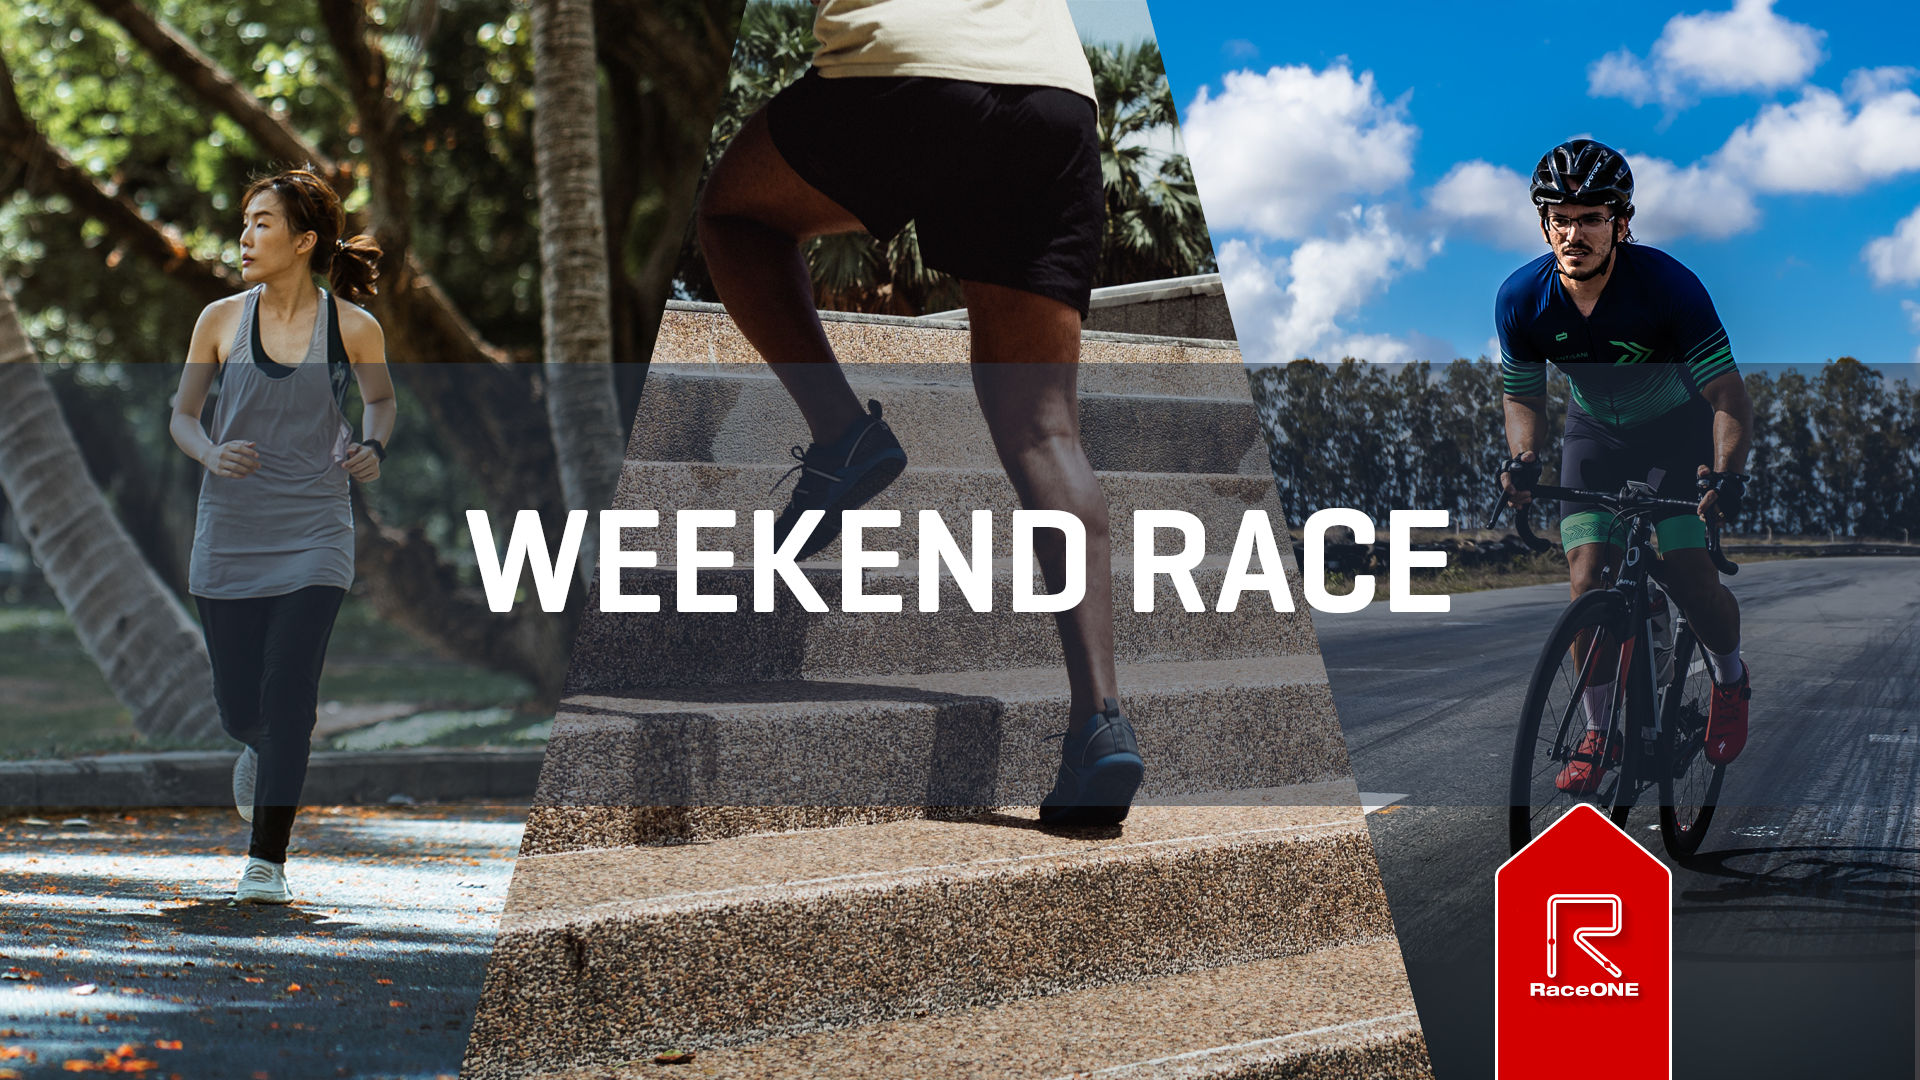 Weekend Race - Week 23 - 30 min